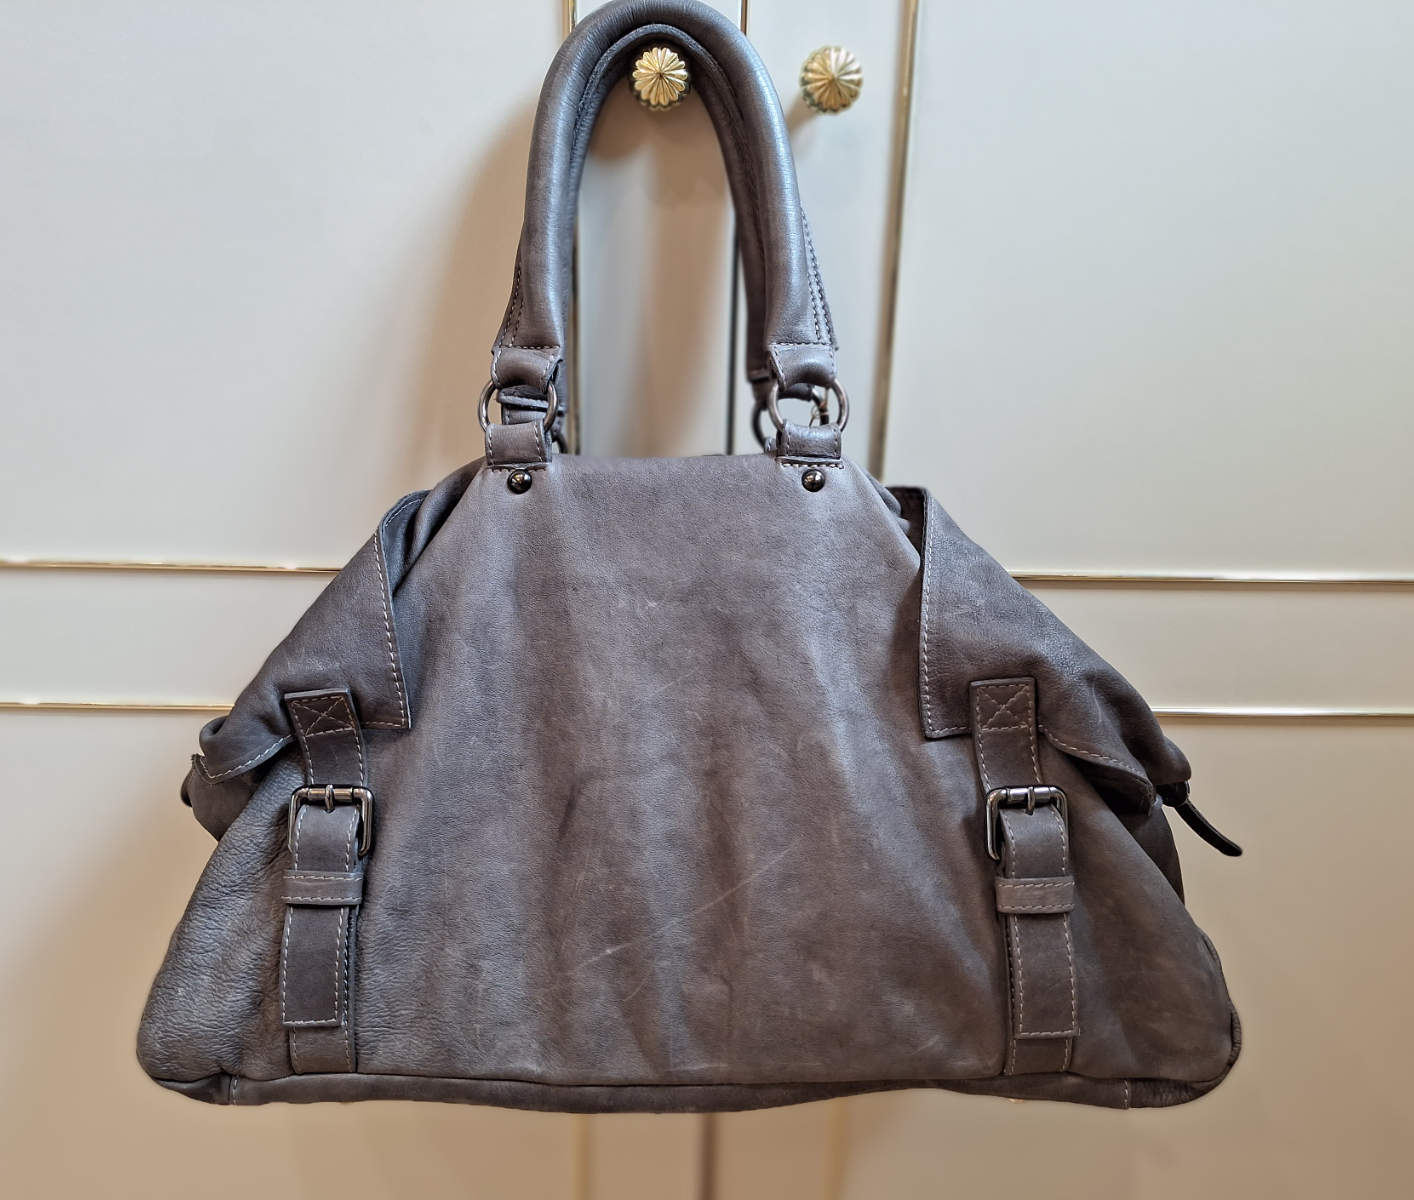 Marccain Tasche in grau,  aus Leder, auch Shopper genannt, für Damen, von hinten.